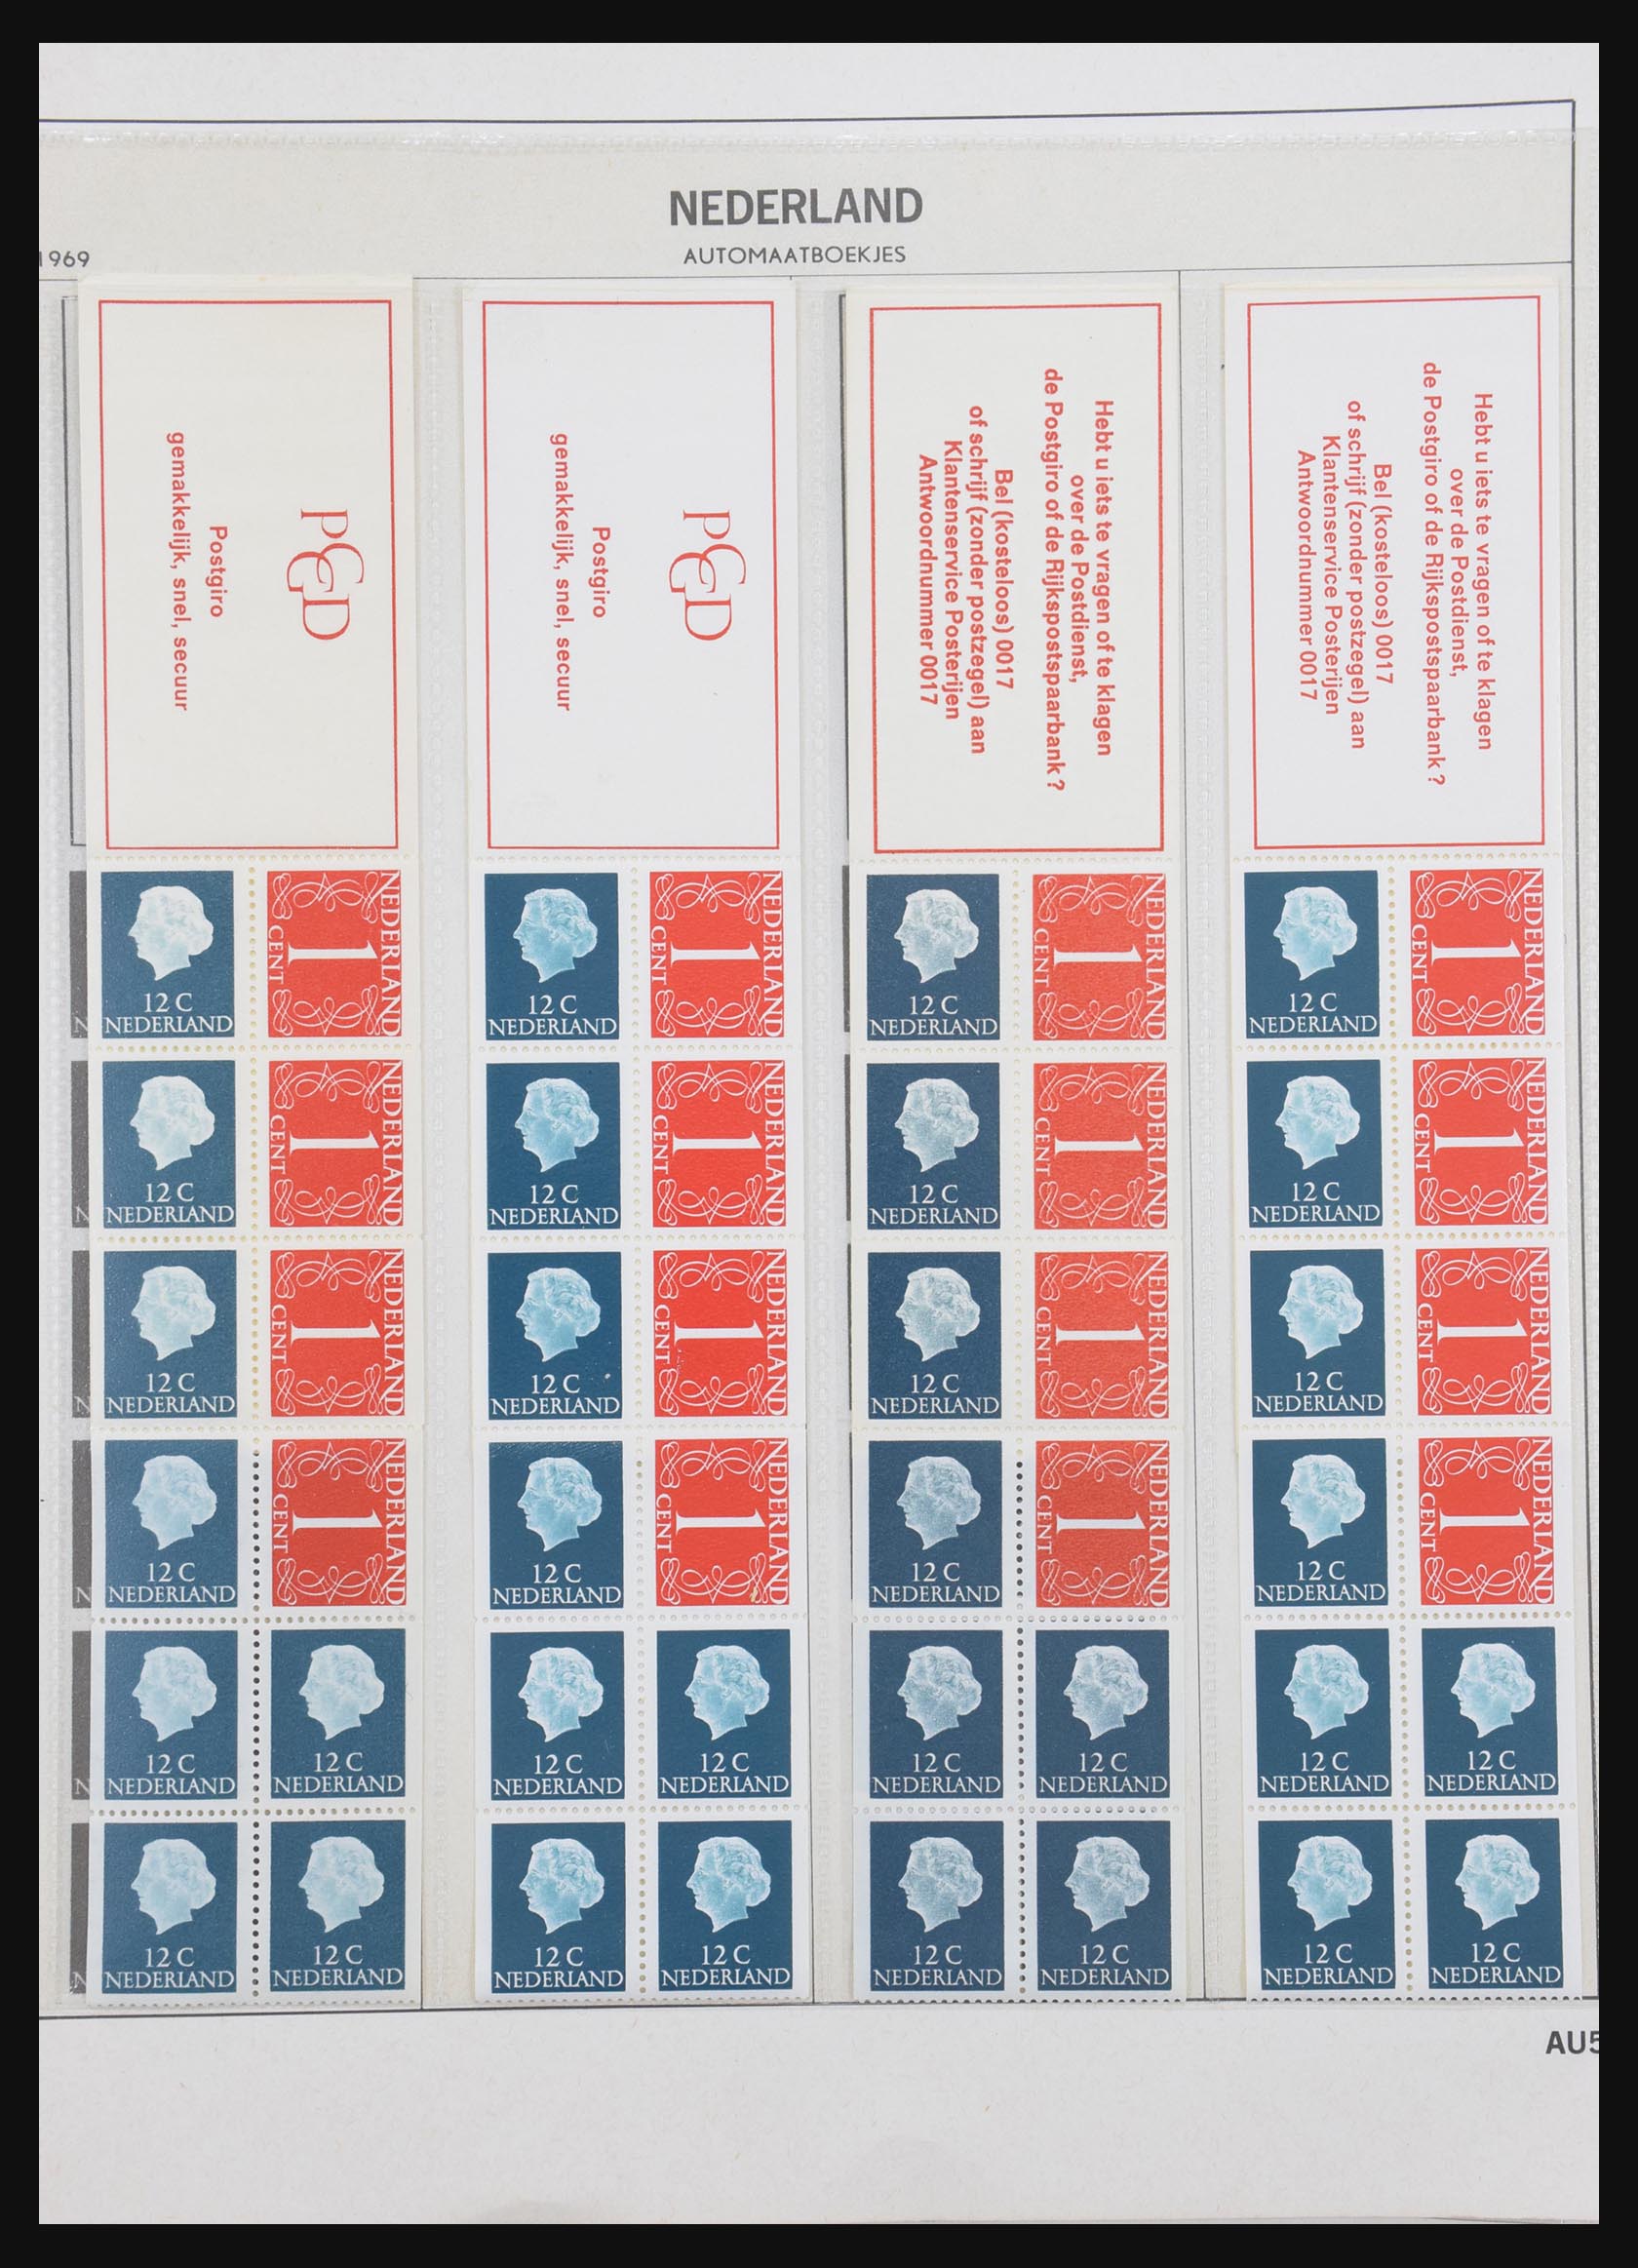 31159 005 - 31159 Netherlands stamp booklets 1964-1994.